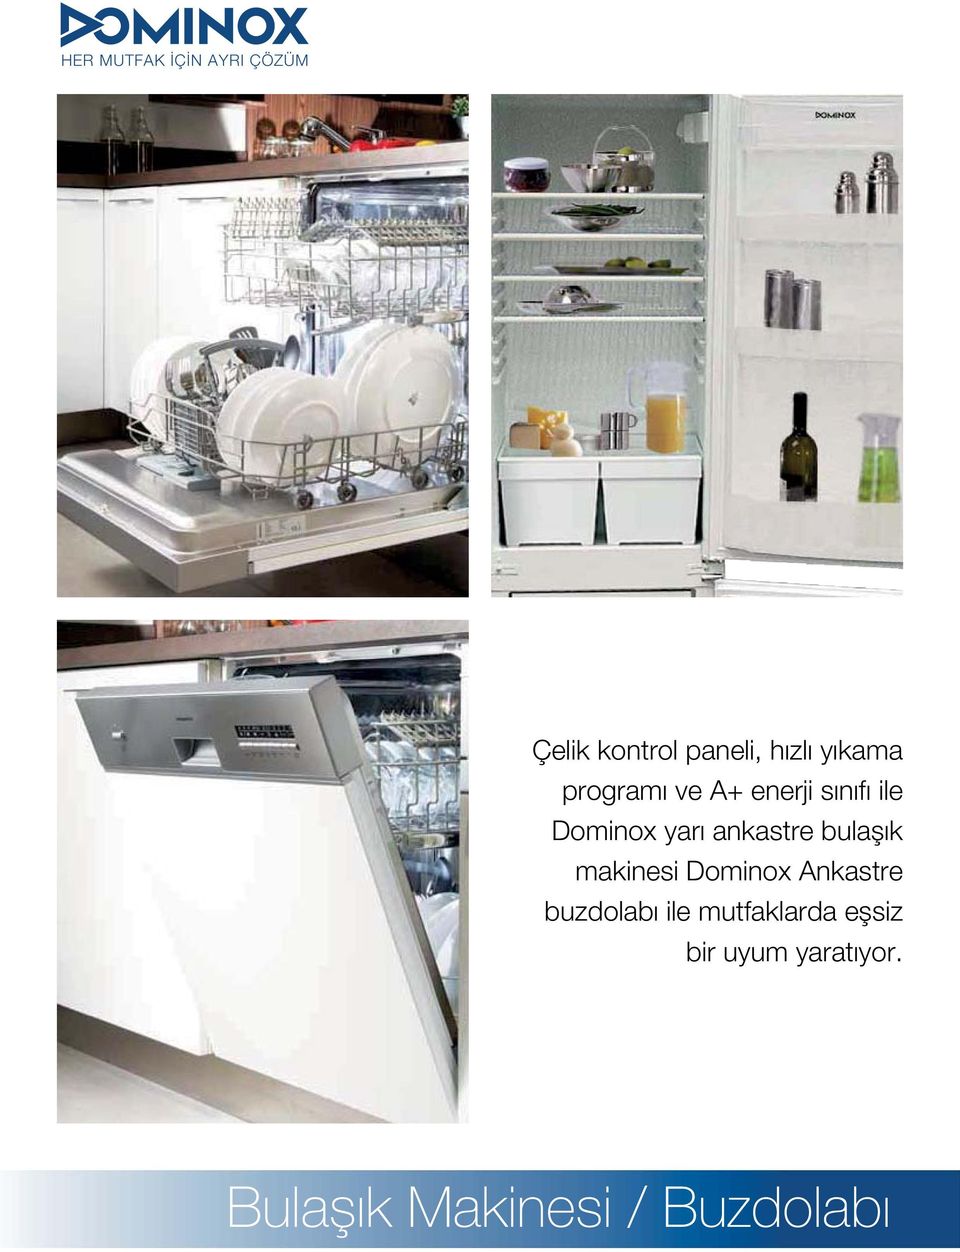 ankastre bulaşık makinesi Dominox Ankastre buzdolabı ile